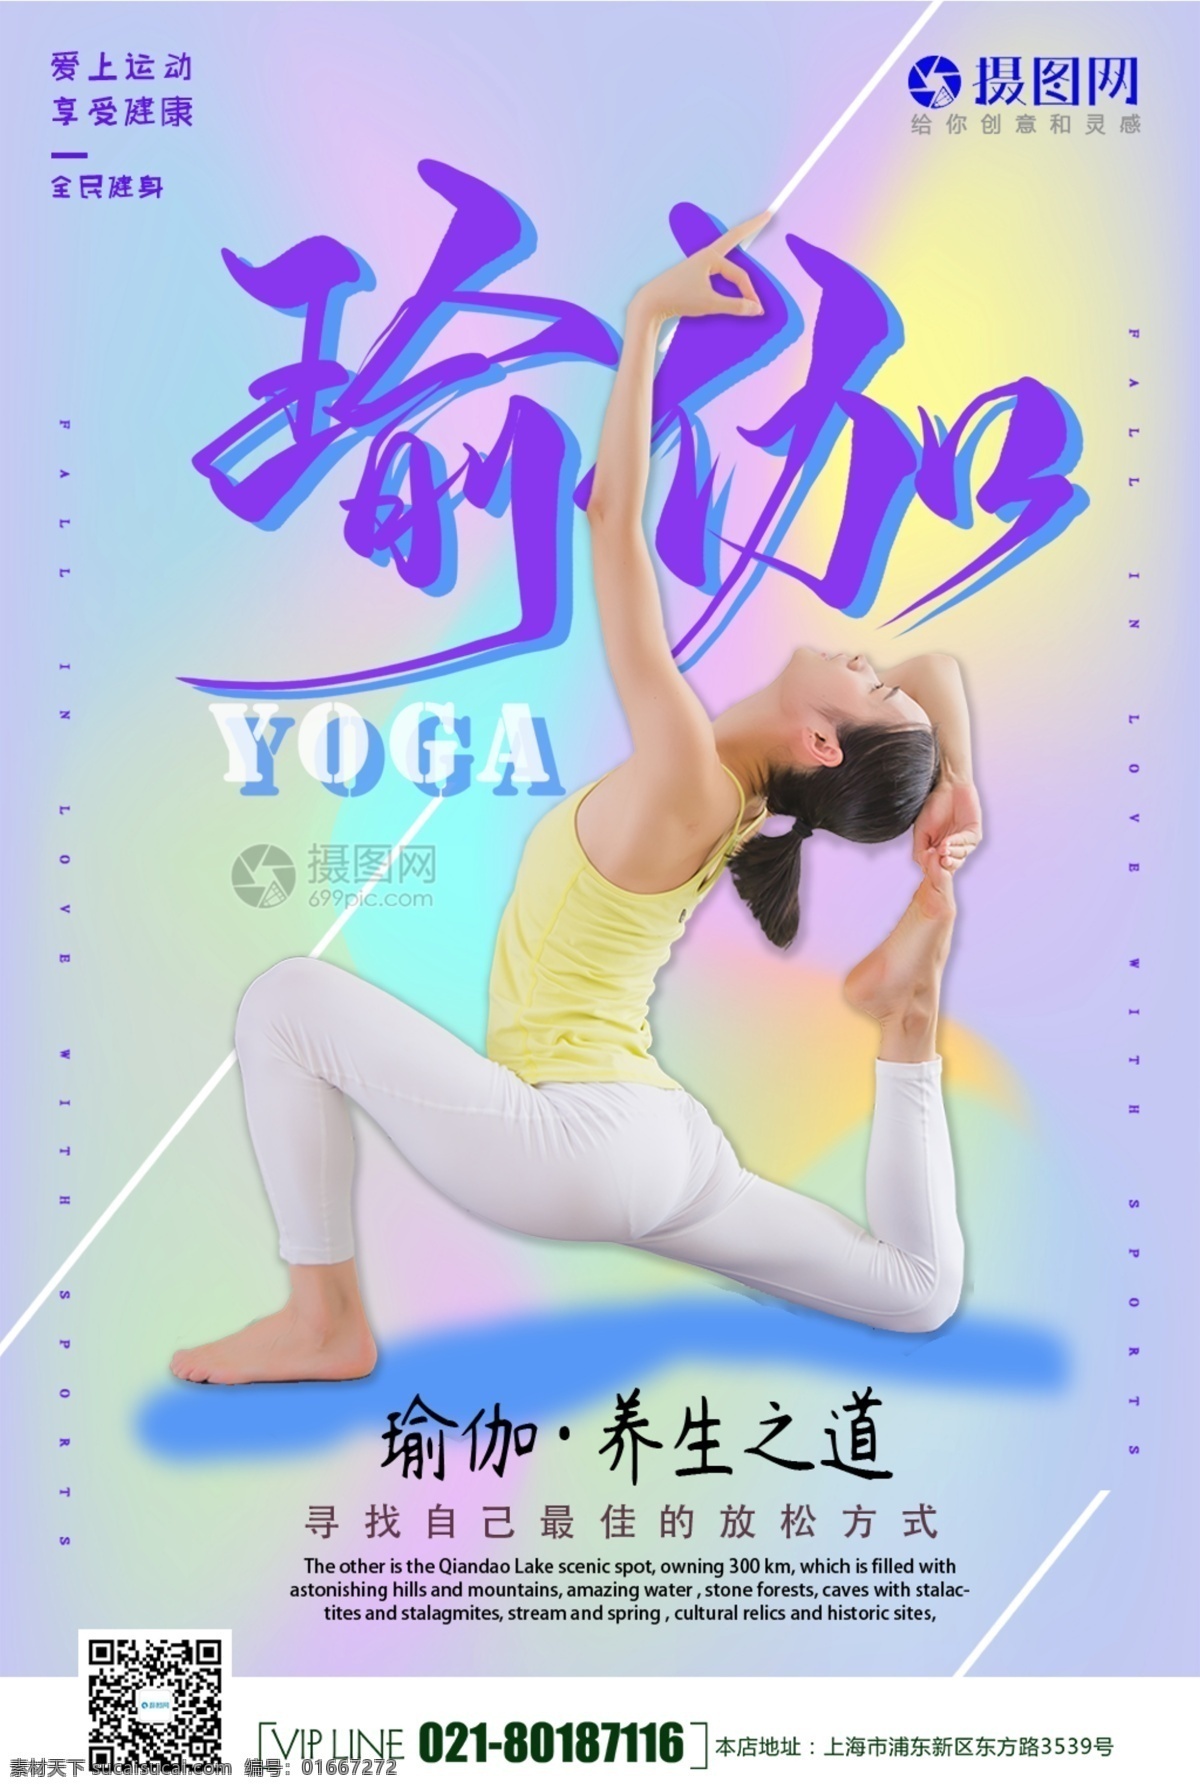 瑜伽 养身 运动 海报 健康 瑜伽馆 瑜伽养生 瑜伽身材 瑜伽教学 魅力瑜伽 好身材 形体 有氧运动 瑜伽海报